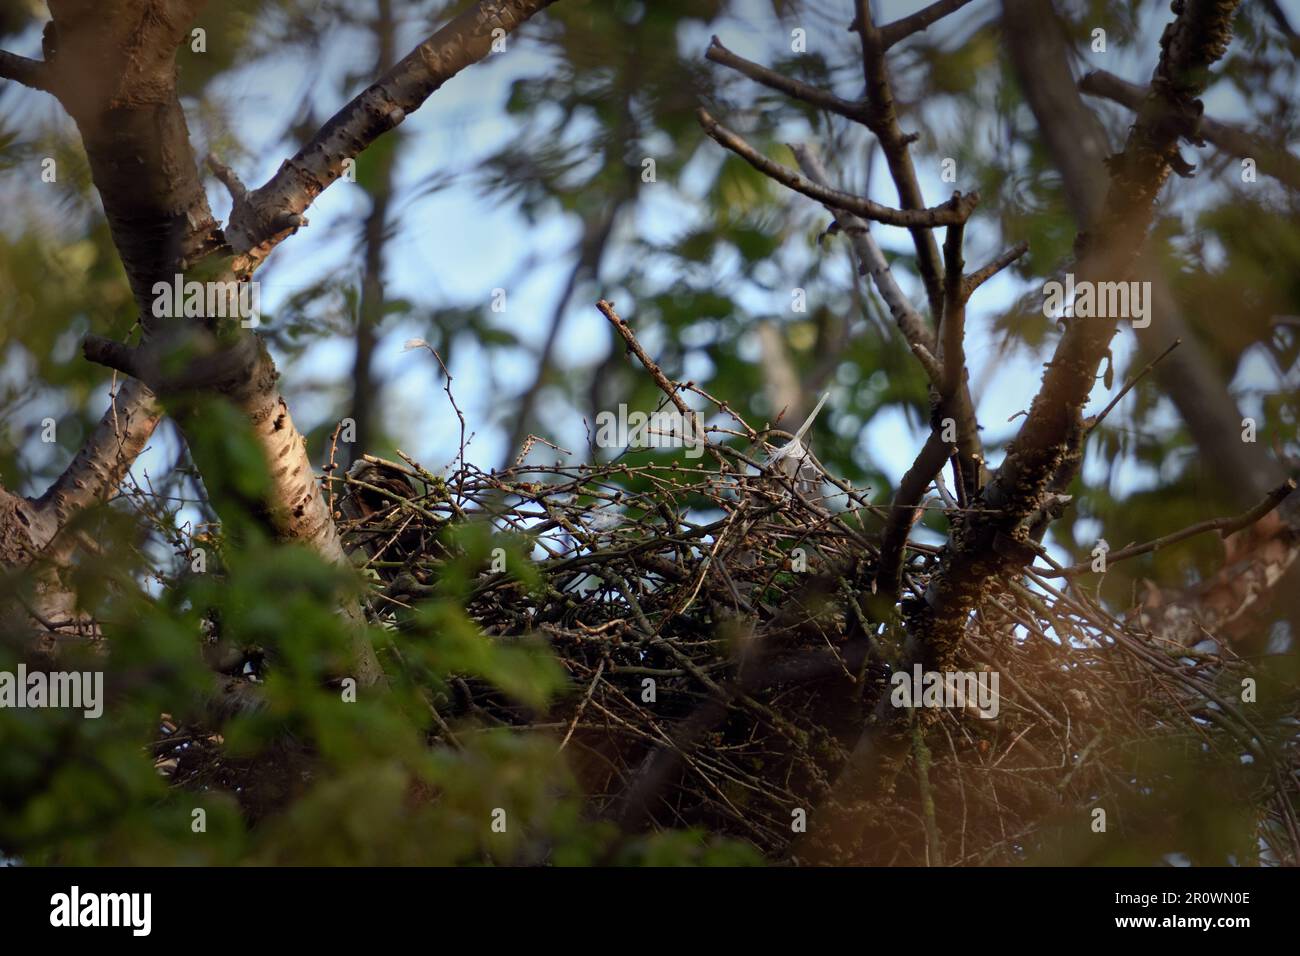 Beginn der Fortpflanzung... Goshawk ( Accipiter gentilis ) auf der Kupplung im Nest, Brut-Moult des Weibchens, nur Schwanzfedern ragen über das Nest Stockfoto